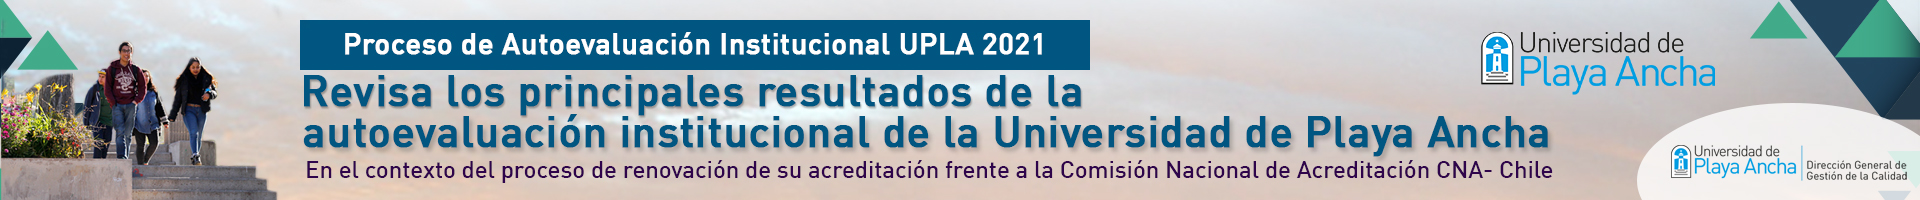 Dirección General de Gestión de Calidad de la UPLA invita a conocer los resultados del proceso de autoevaluación institucional